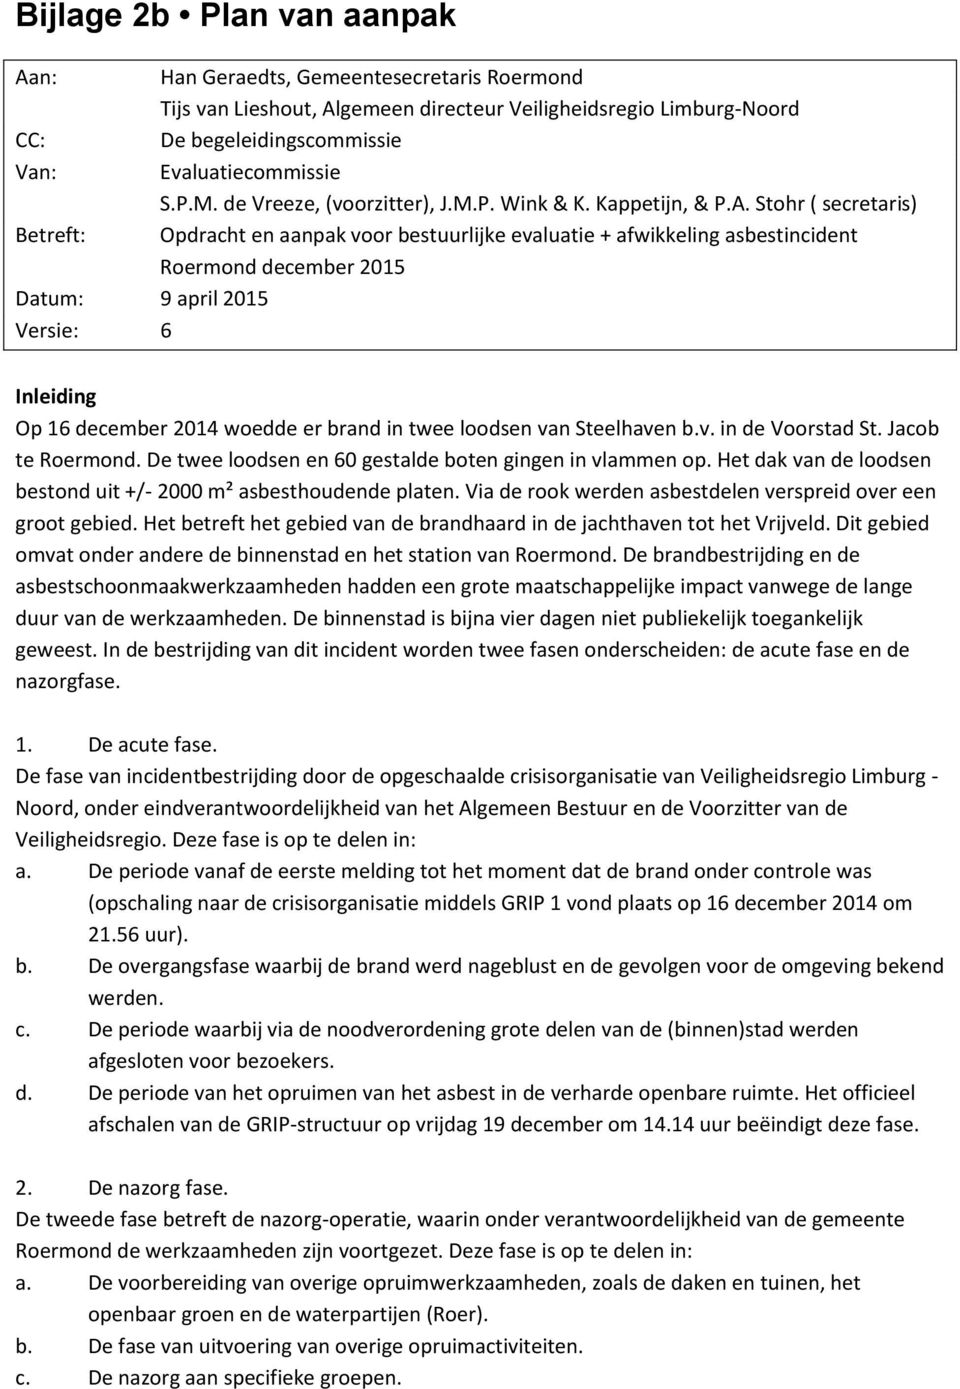 Stohr ( secretaris) Betreft: Opdracht en aanpak voor bestuurlijke evaluatie + afwikkeling asbestincident Roermond december 2015 Datum: 9 april 2015 Versie: 6 Inleiding Op 16 december woedde er brand